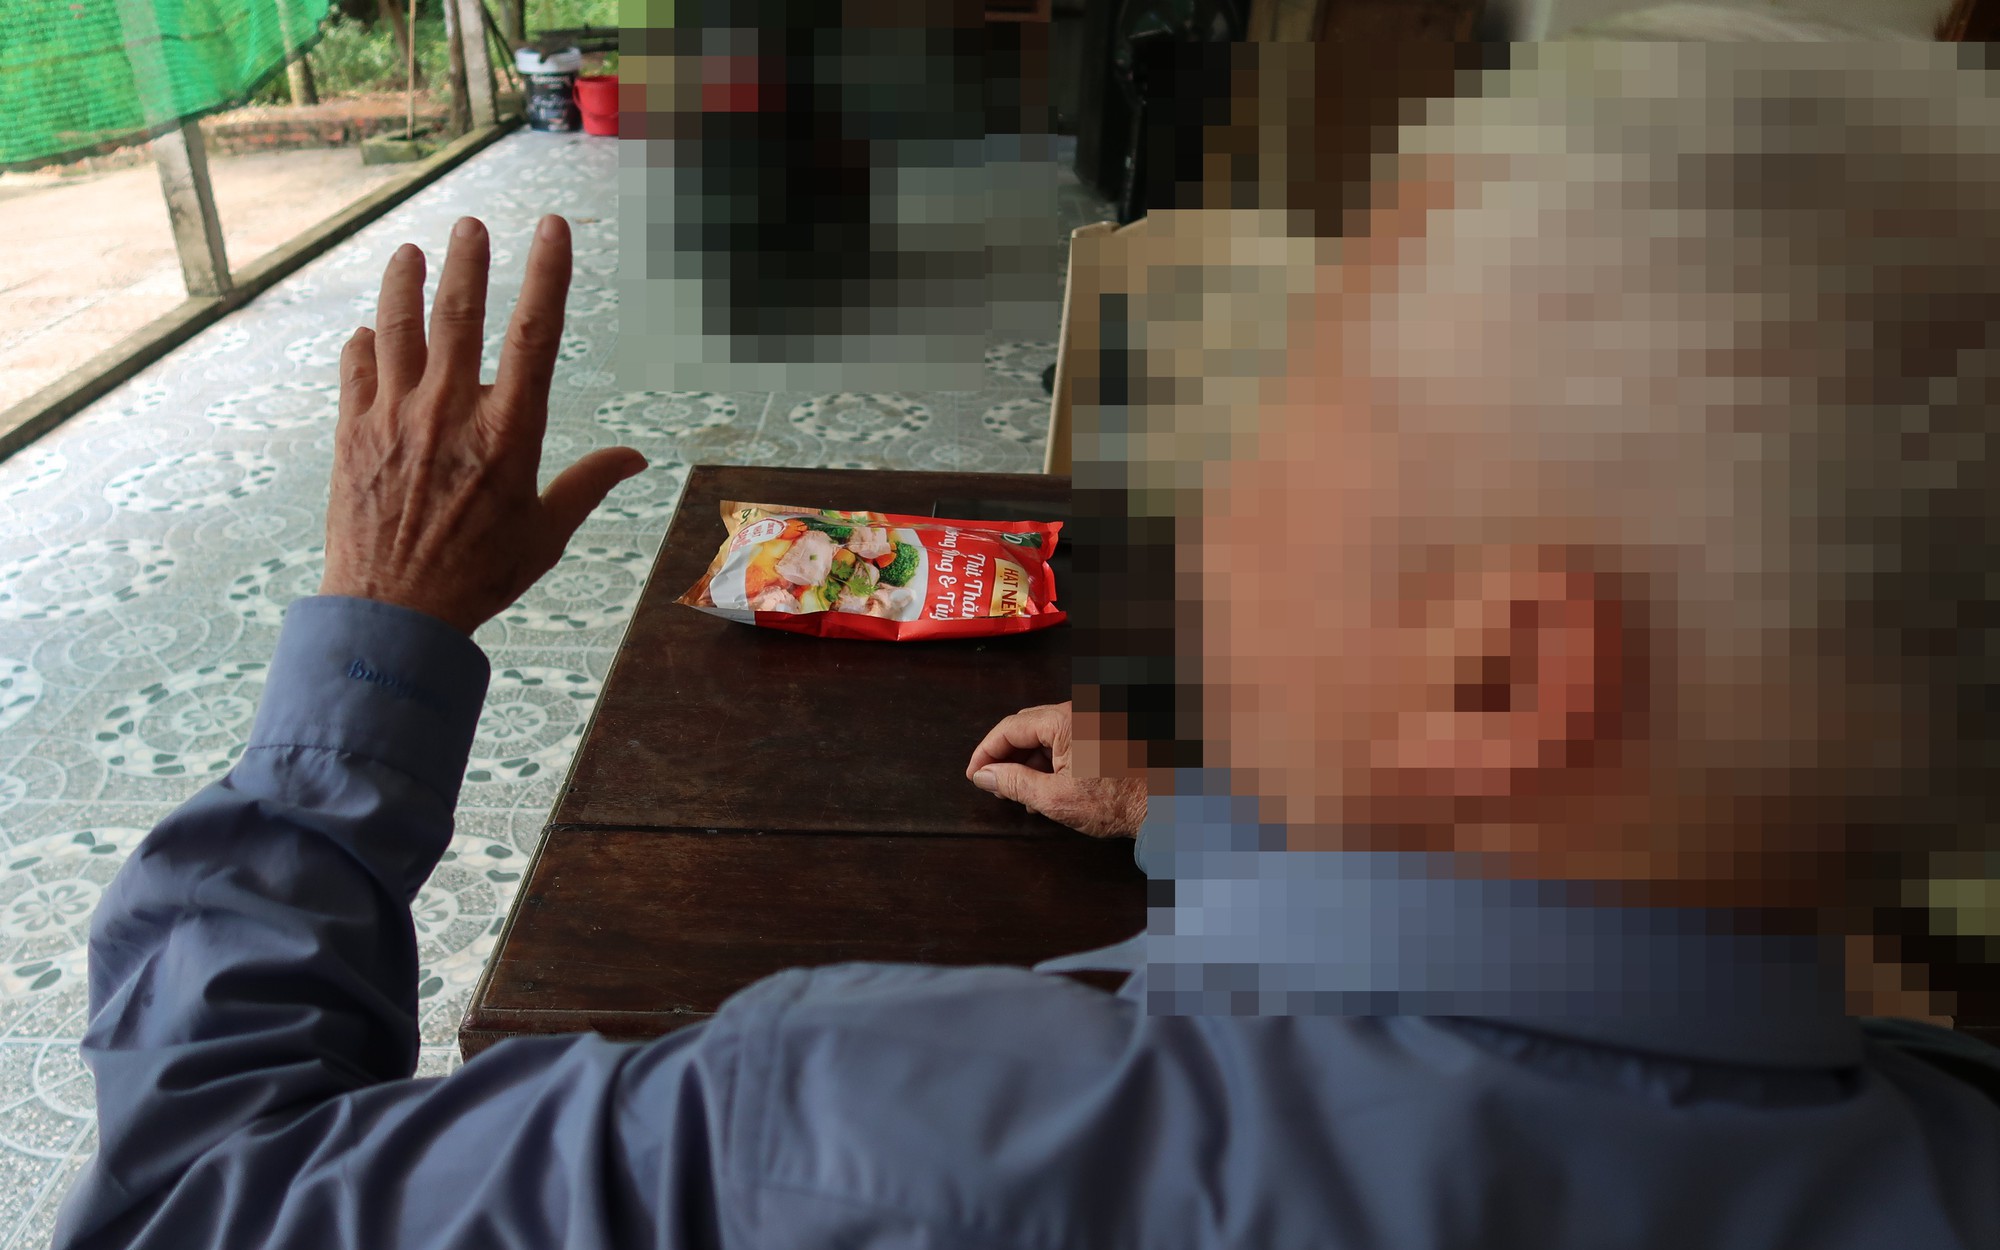 Bóc mẽ chiêu lừa tinh vi khiến hàng trăm dân nghèo ở Nghệ An sập bẫy